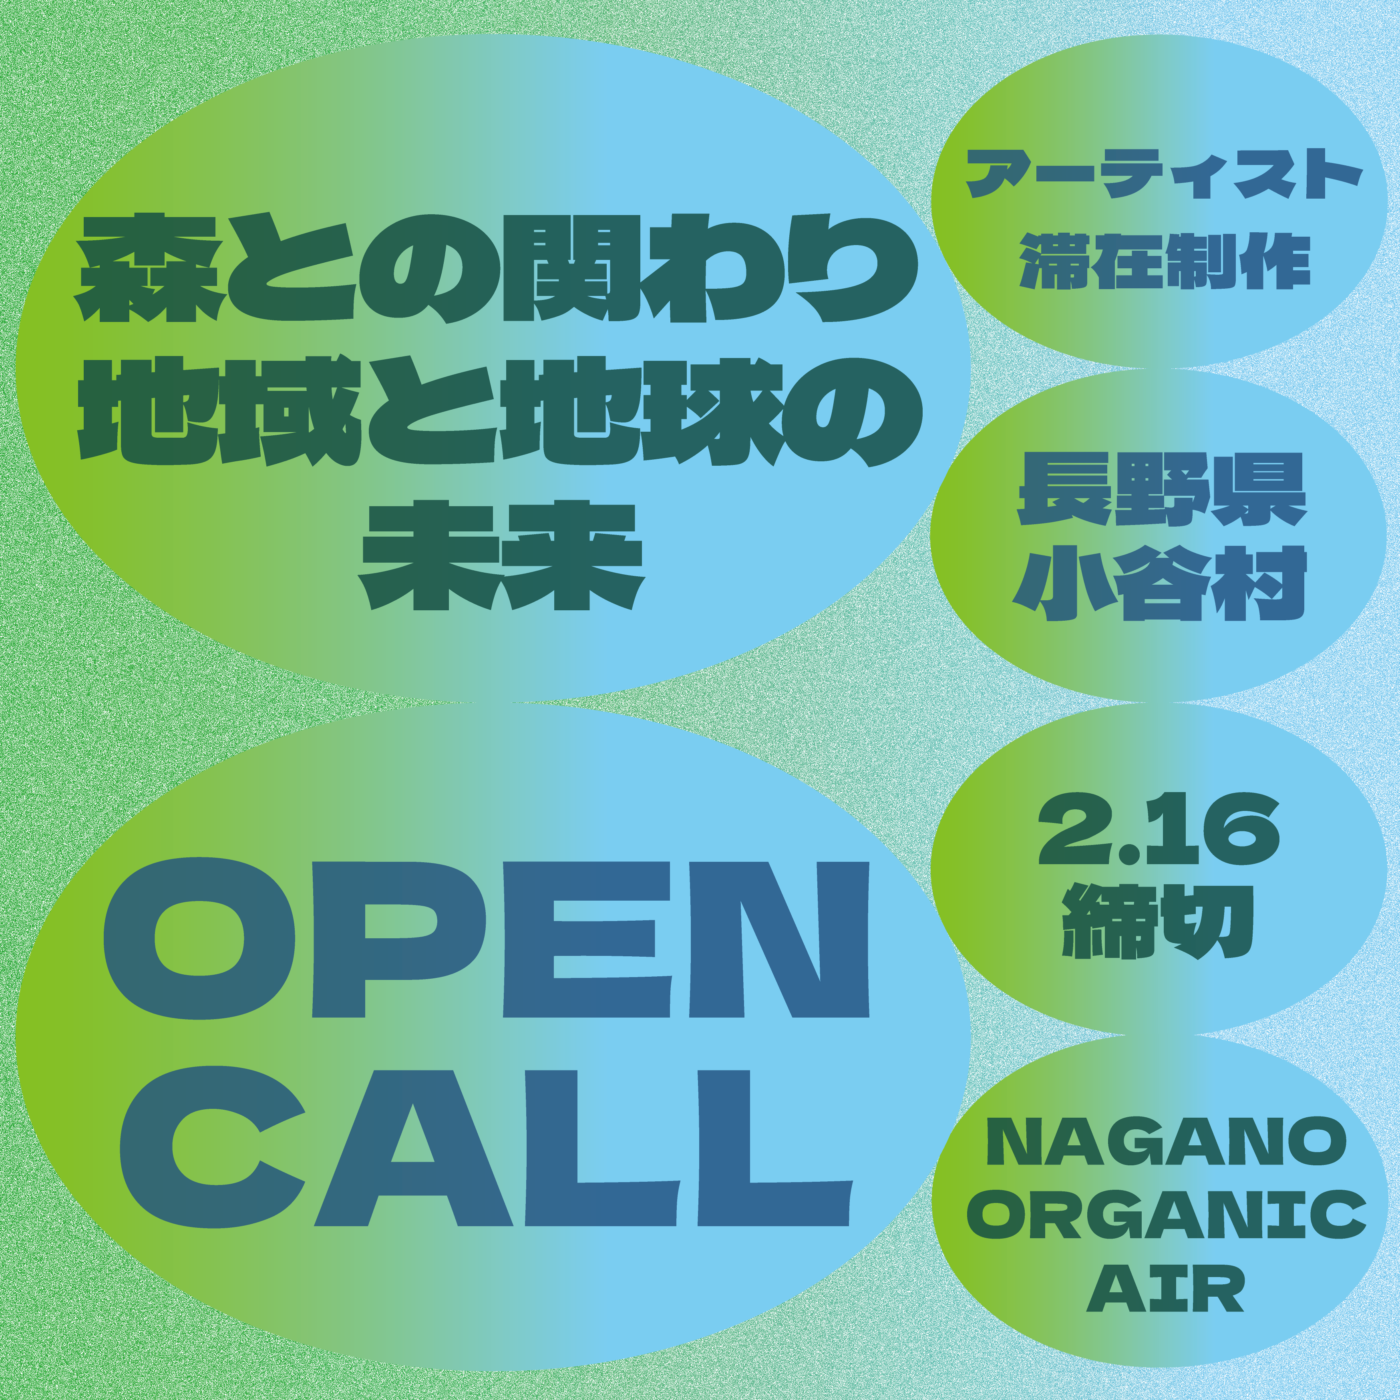 【募集】NAGANO ORGANIC AIR 小谷村 「森との関わり／地域と地球の未来」